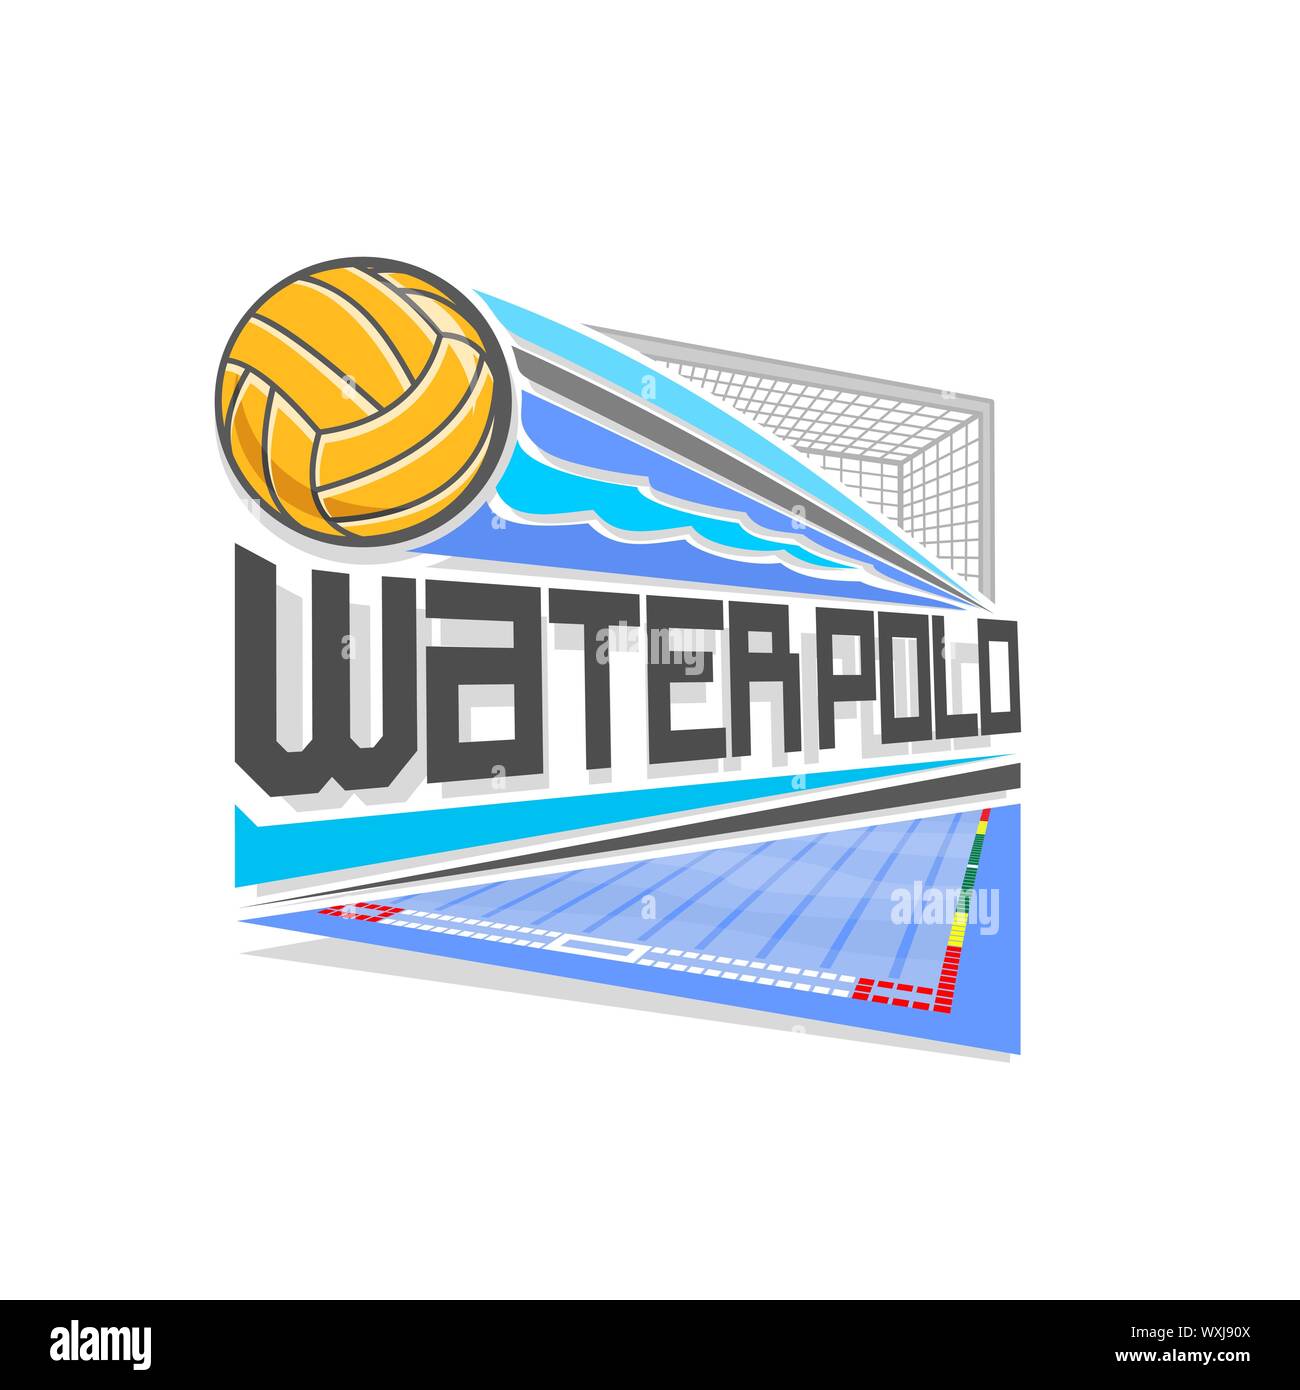 Vektor logo für Wasserball Spiel: geworfen gelb Wasserball Ball auf Flugbahn im Tor Tor mit Netz fliegen. Stock Vektor